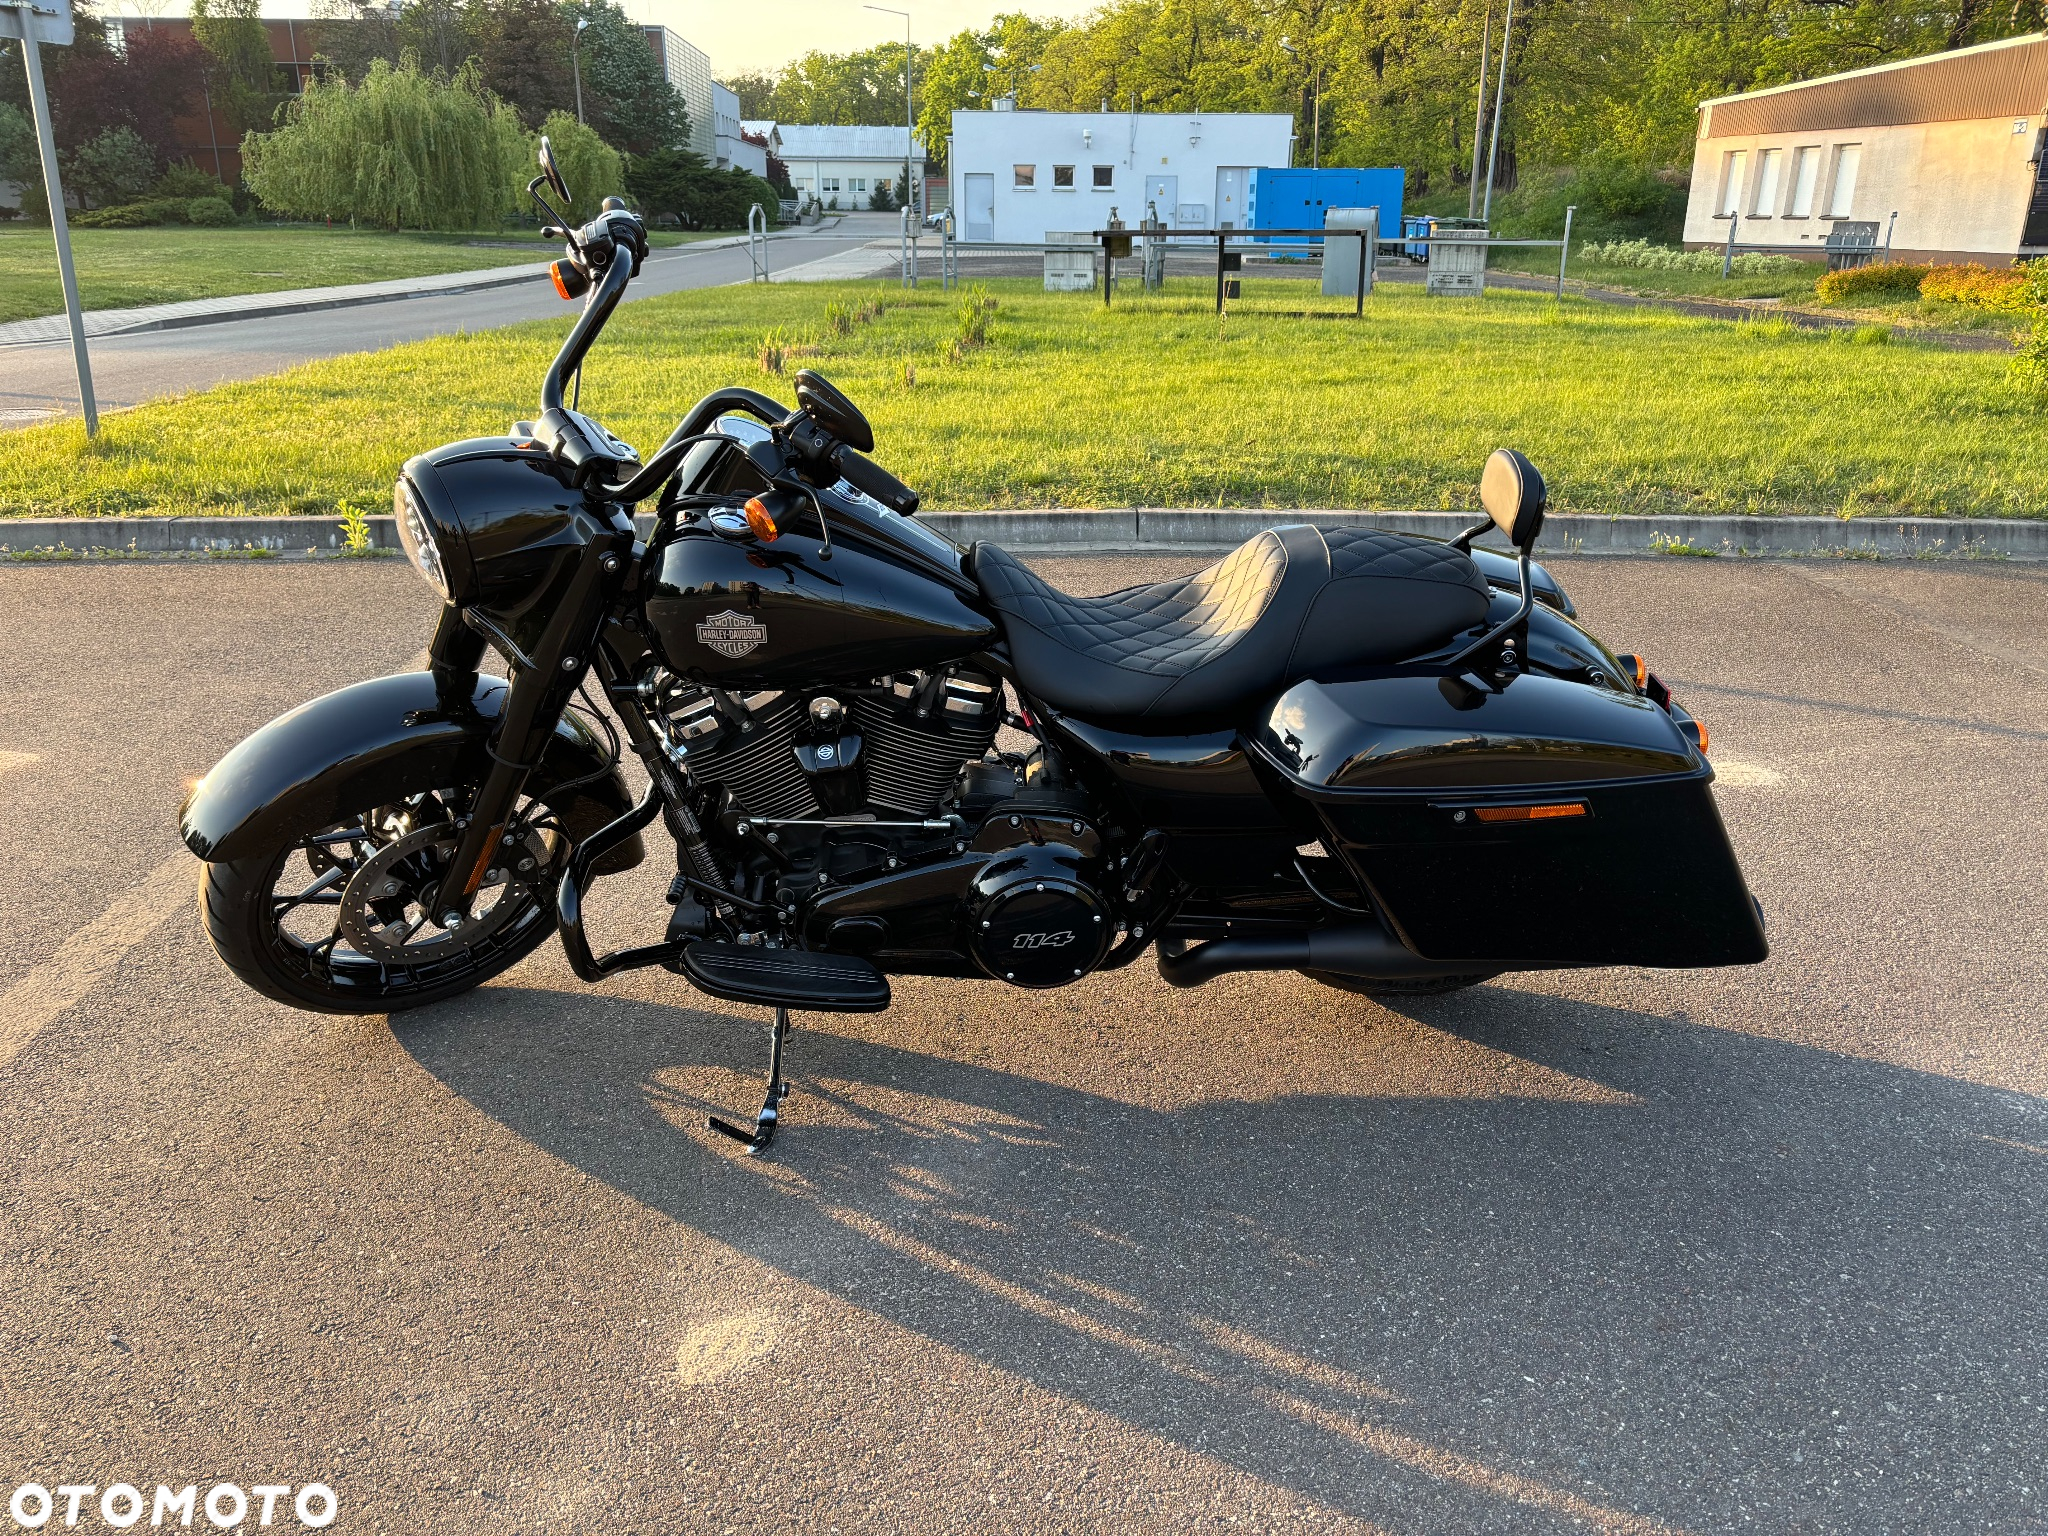 Harley-Davidson Touring Road King - 2